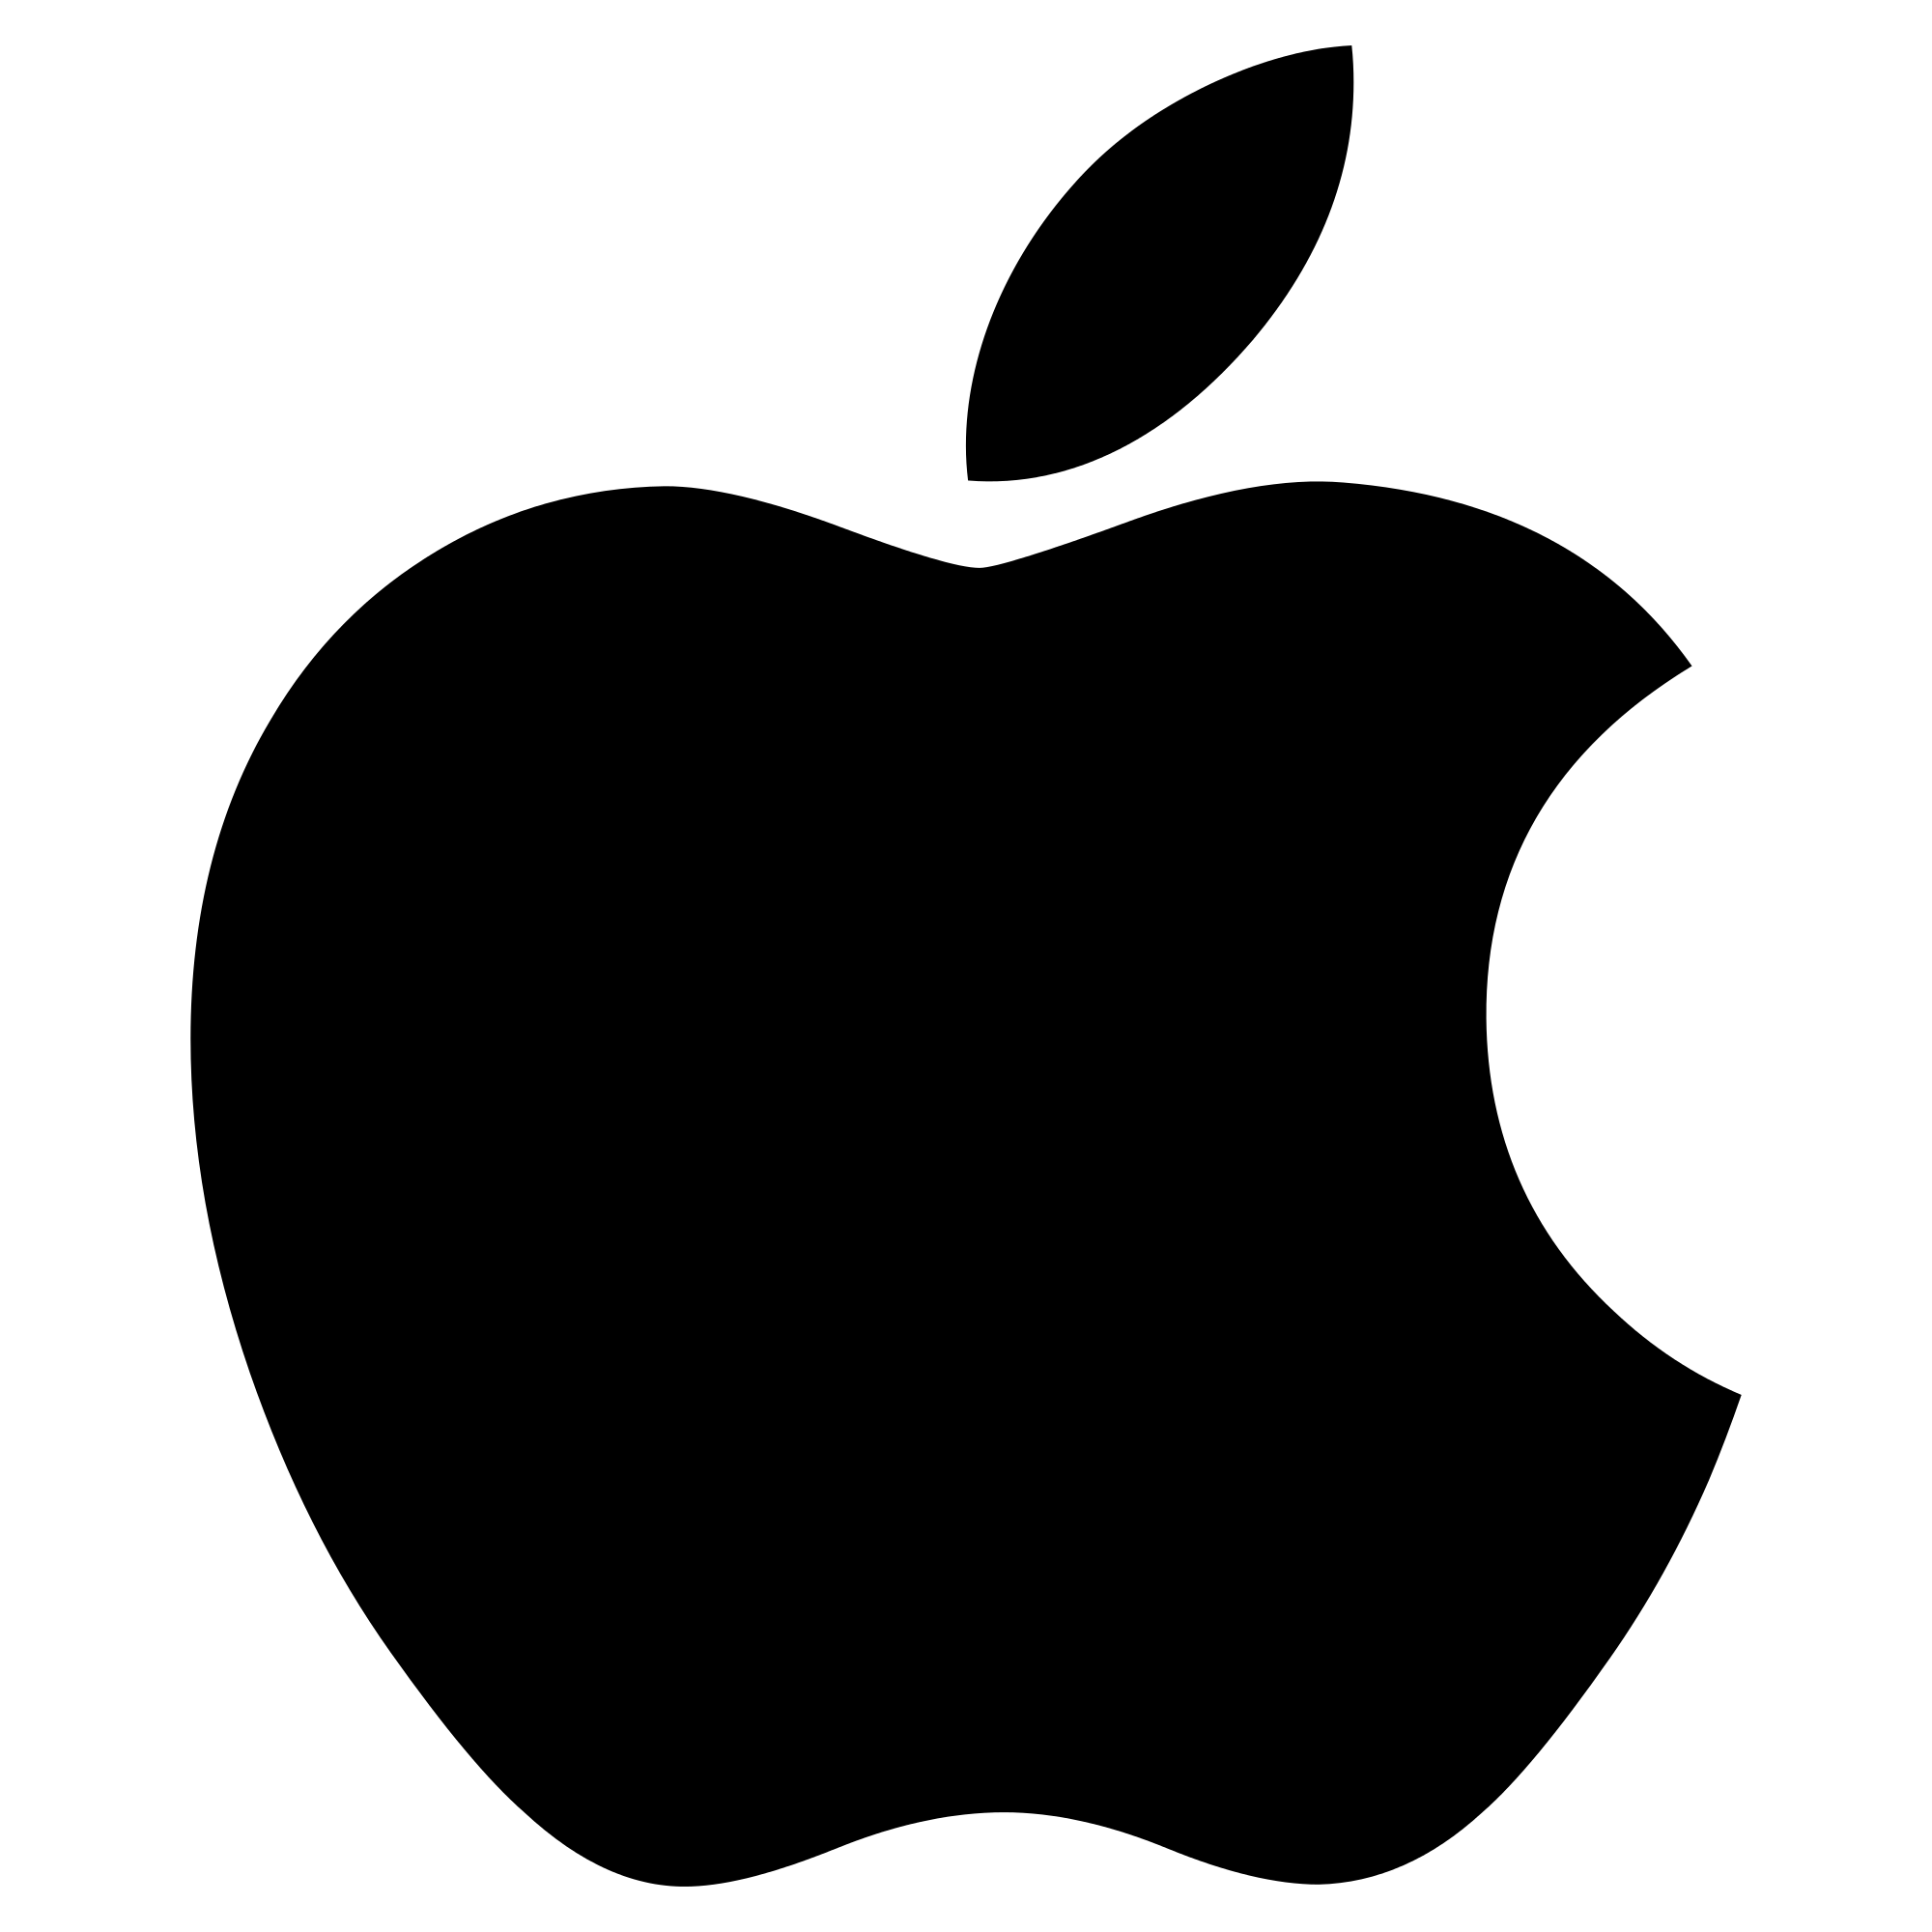 Logo Apple PNG HD Image Free Download Transparent PNG Logos